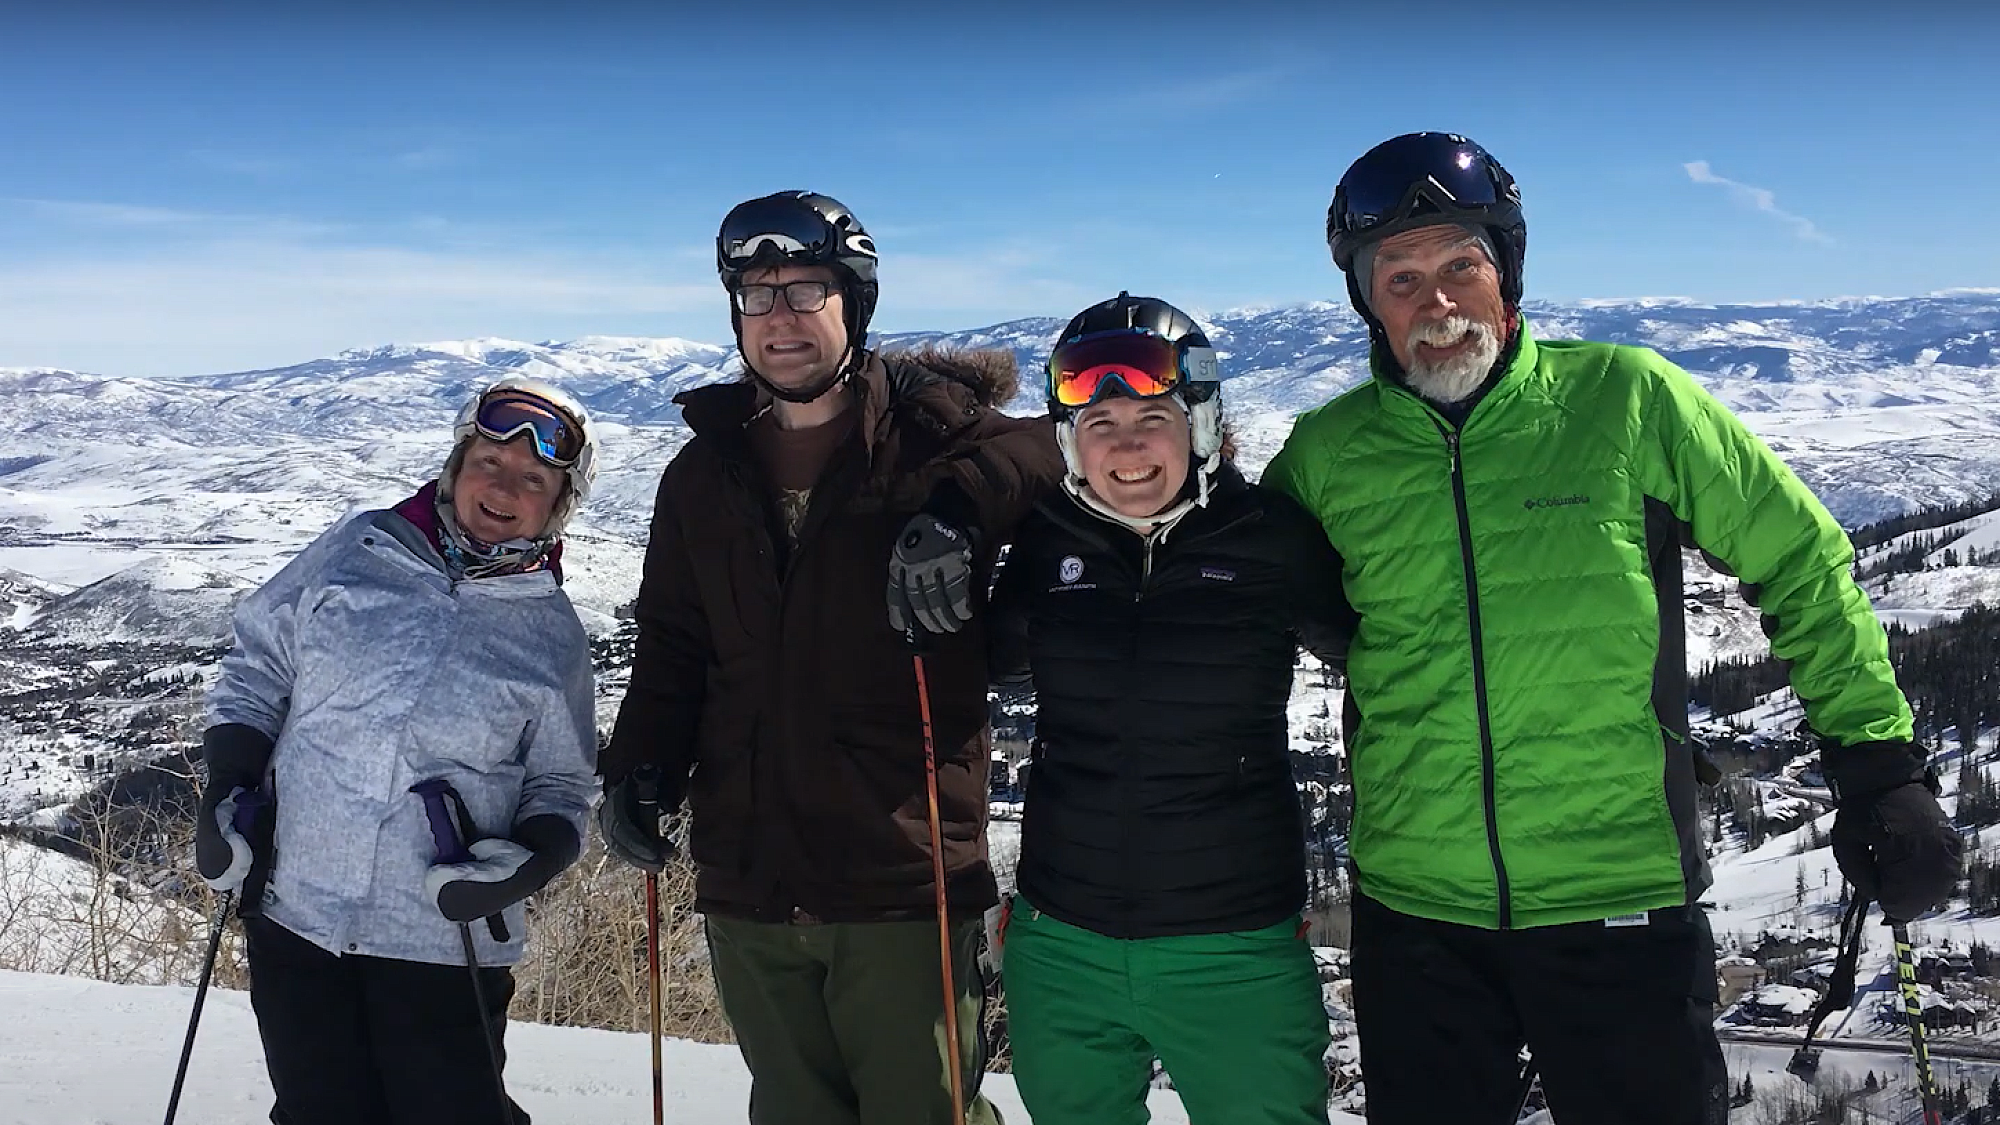 Pat Wasilewski Group Ski Photo Outside in Mountains